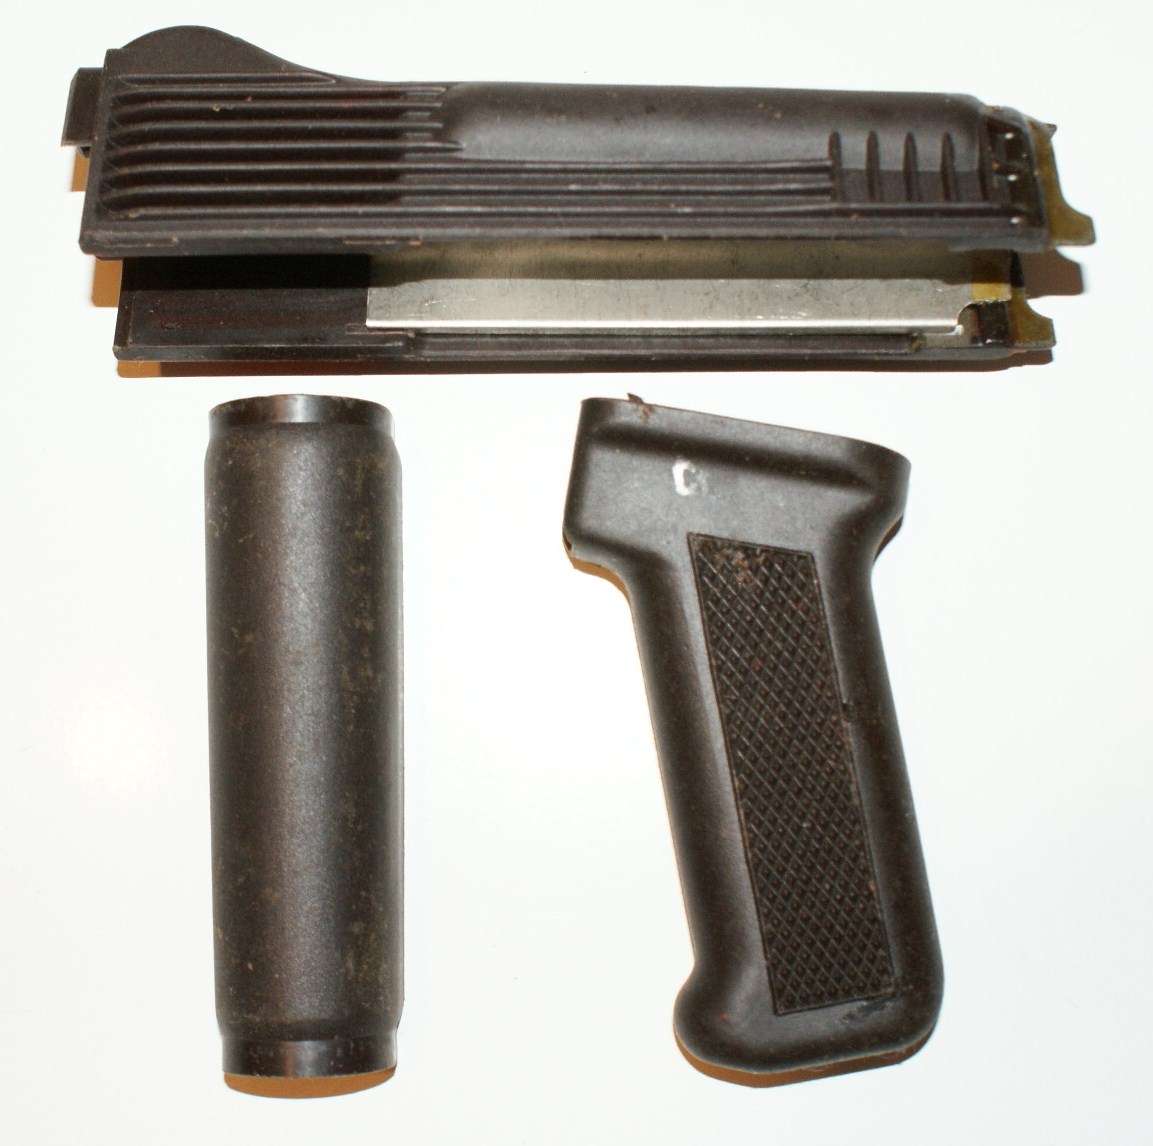 WTS Russian plum AK polymer handguards w/pistol grip.